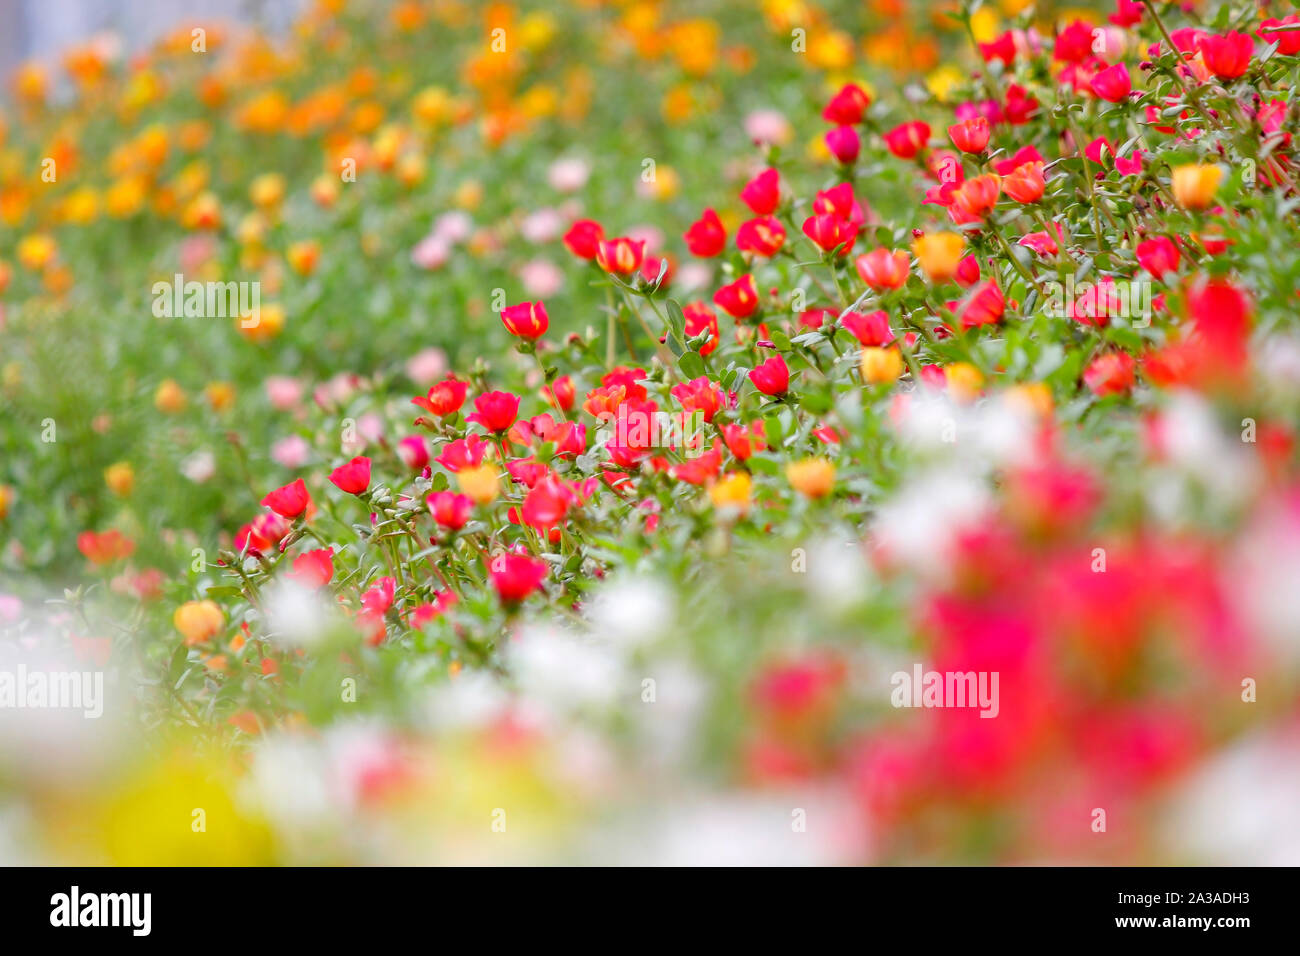 Foto von bunten Gemeinsame portulak oder verdolaga Blume im Garten Stockfoto